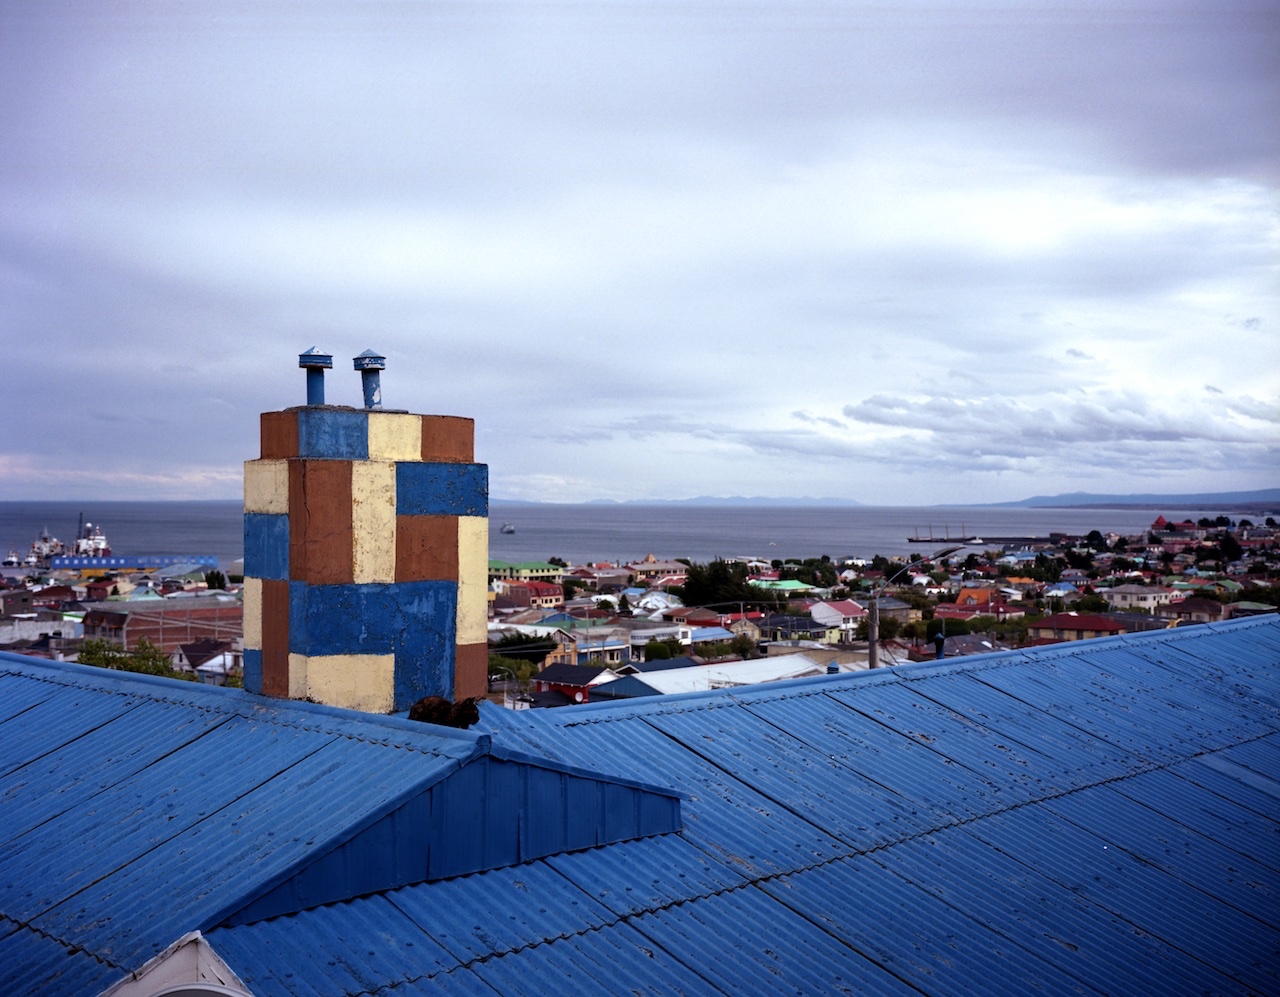 Chile, Southern Patagonia, Punta Arenas